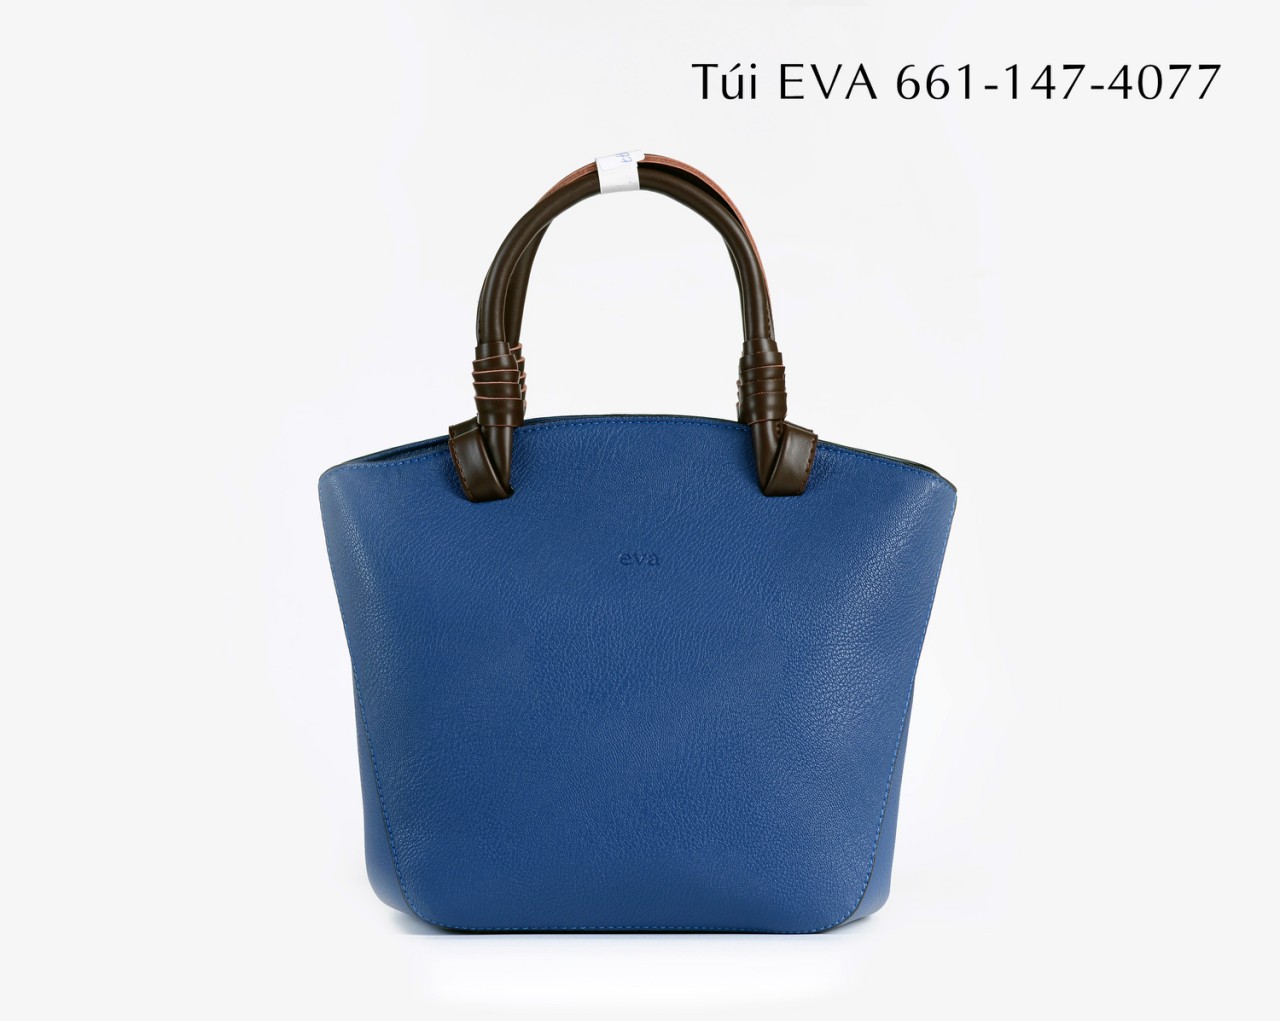 Túi xách nữ EVA661-147-4077 kiểu dáng trang nhã, tinh tế mới